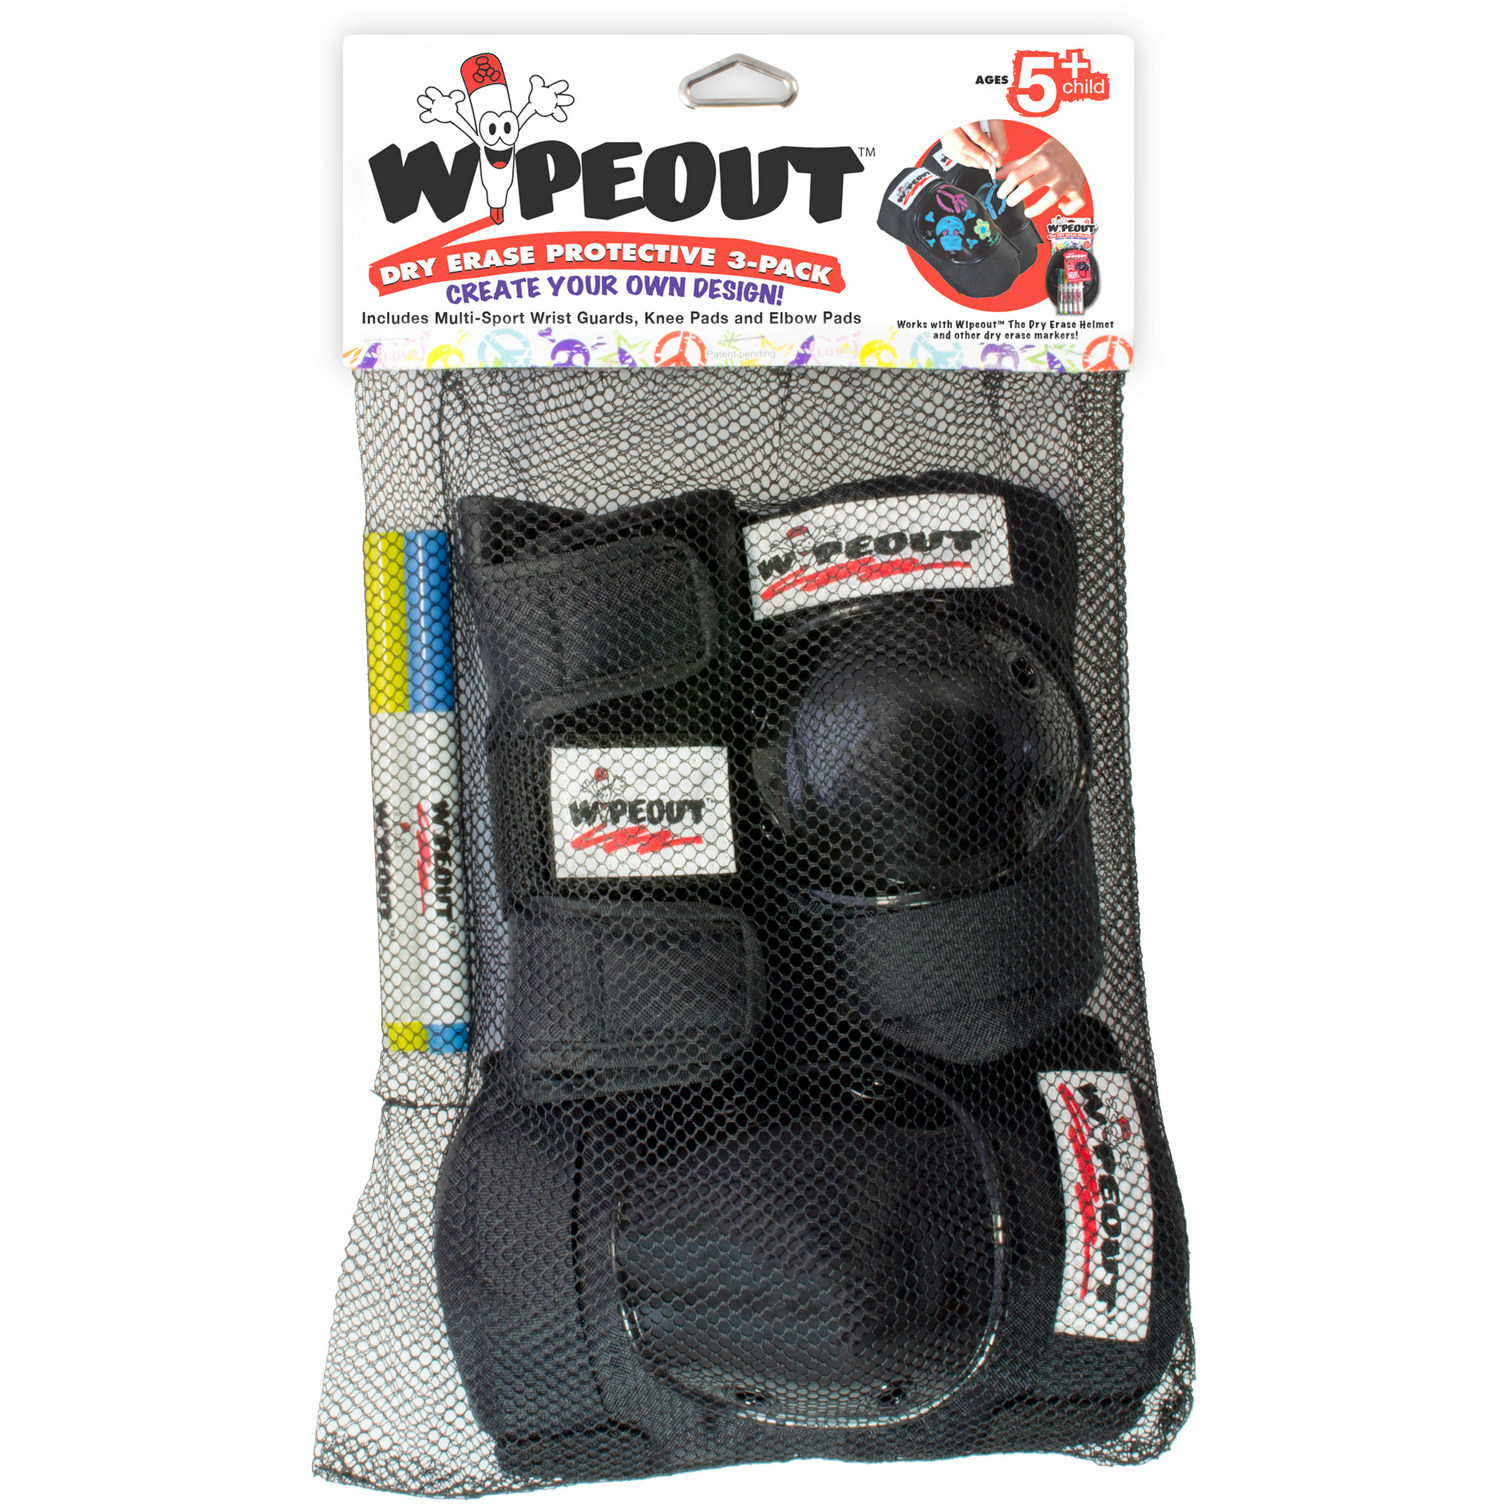 Комплект защиты 3-в-1 WIPEOUT Black чёрный с фломастерами и трафаретами наколенники налокотники для запястья - фото 3